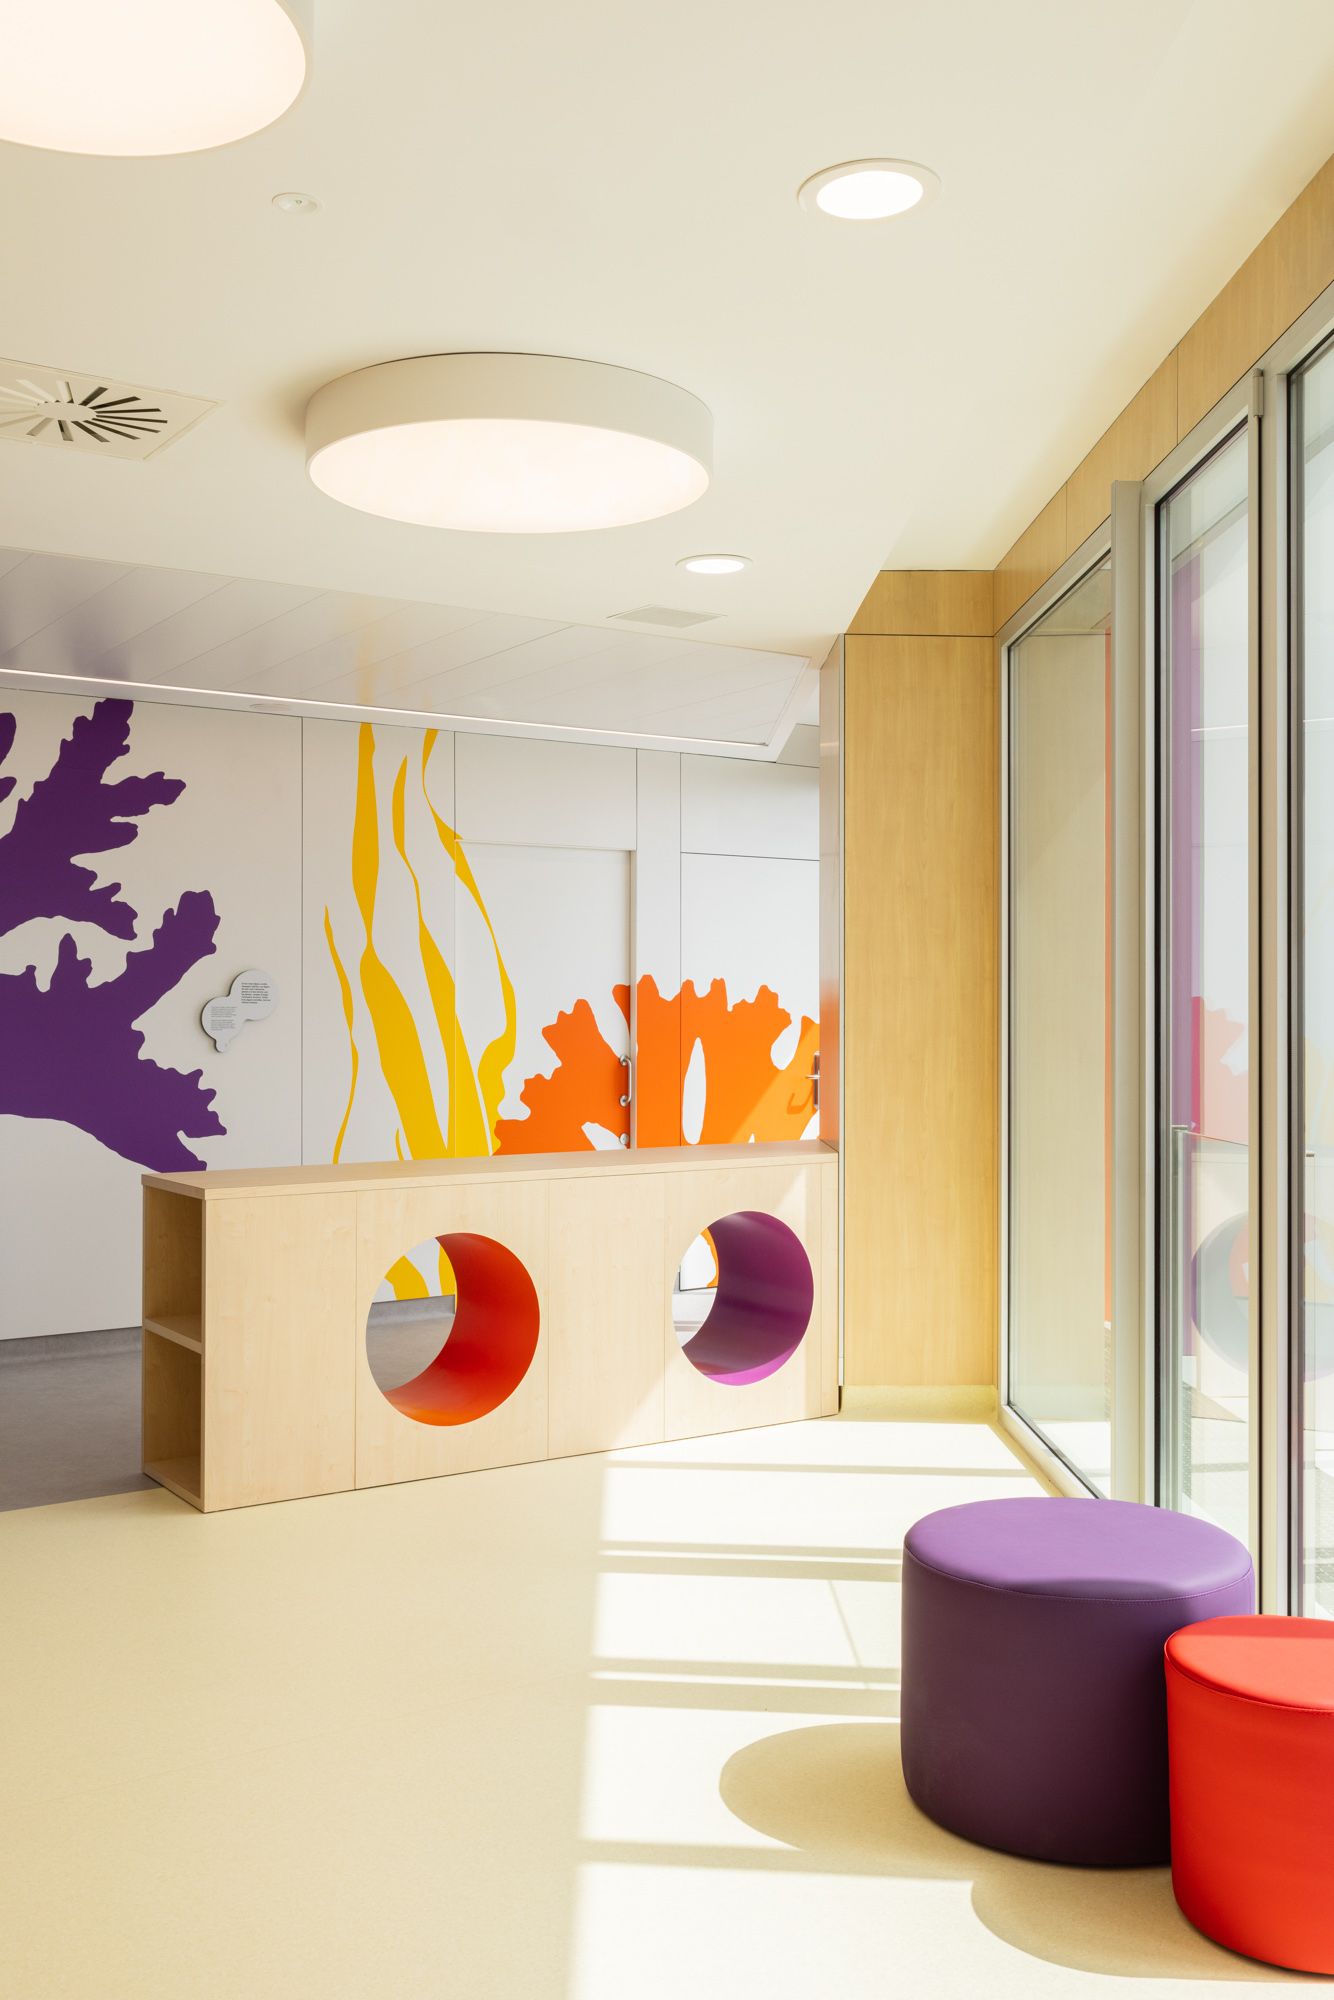 图片[7]|巴塞罗那癌症儿科中心|ART-Arrakis | 建筑室内设计的创新与灵感